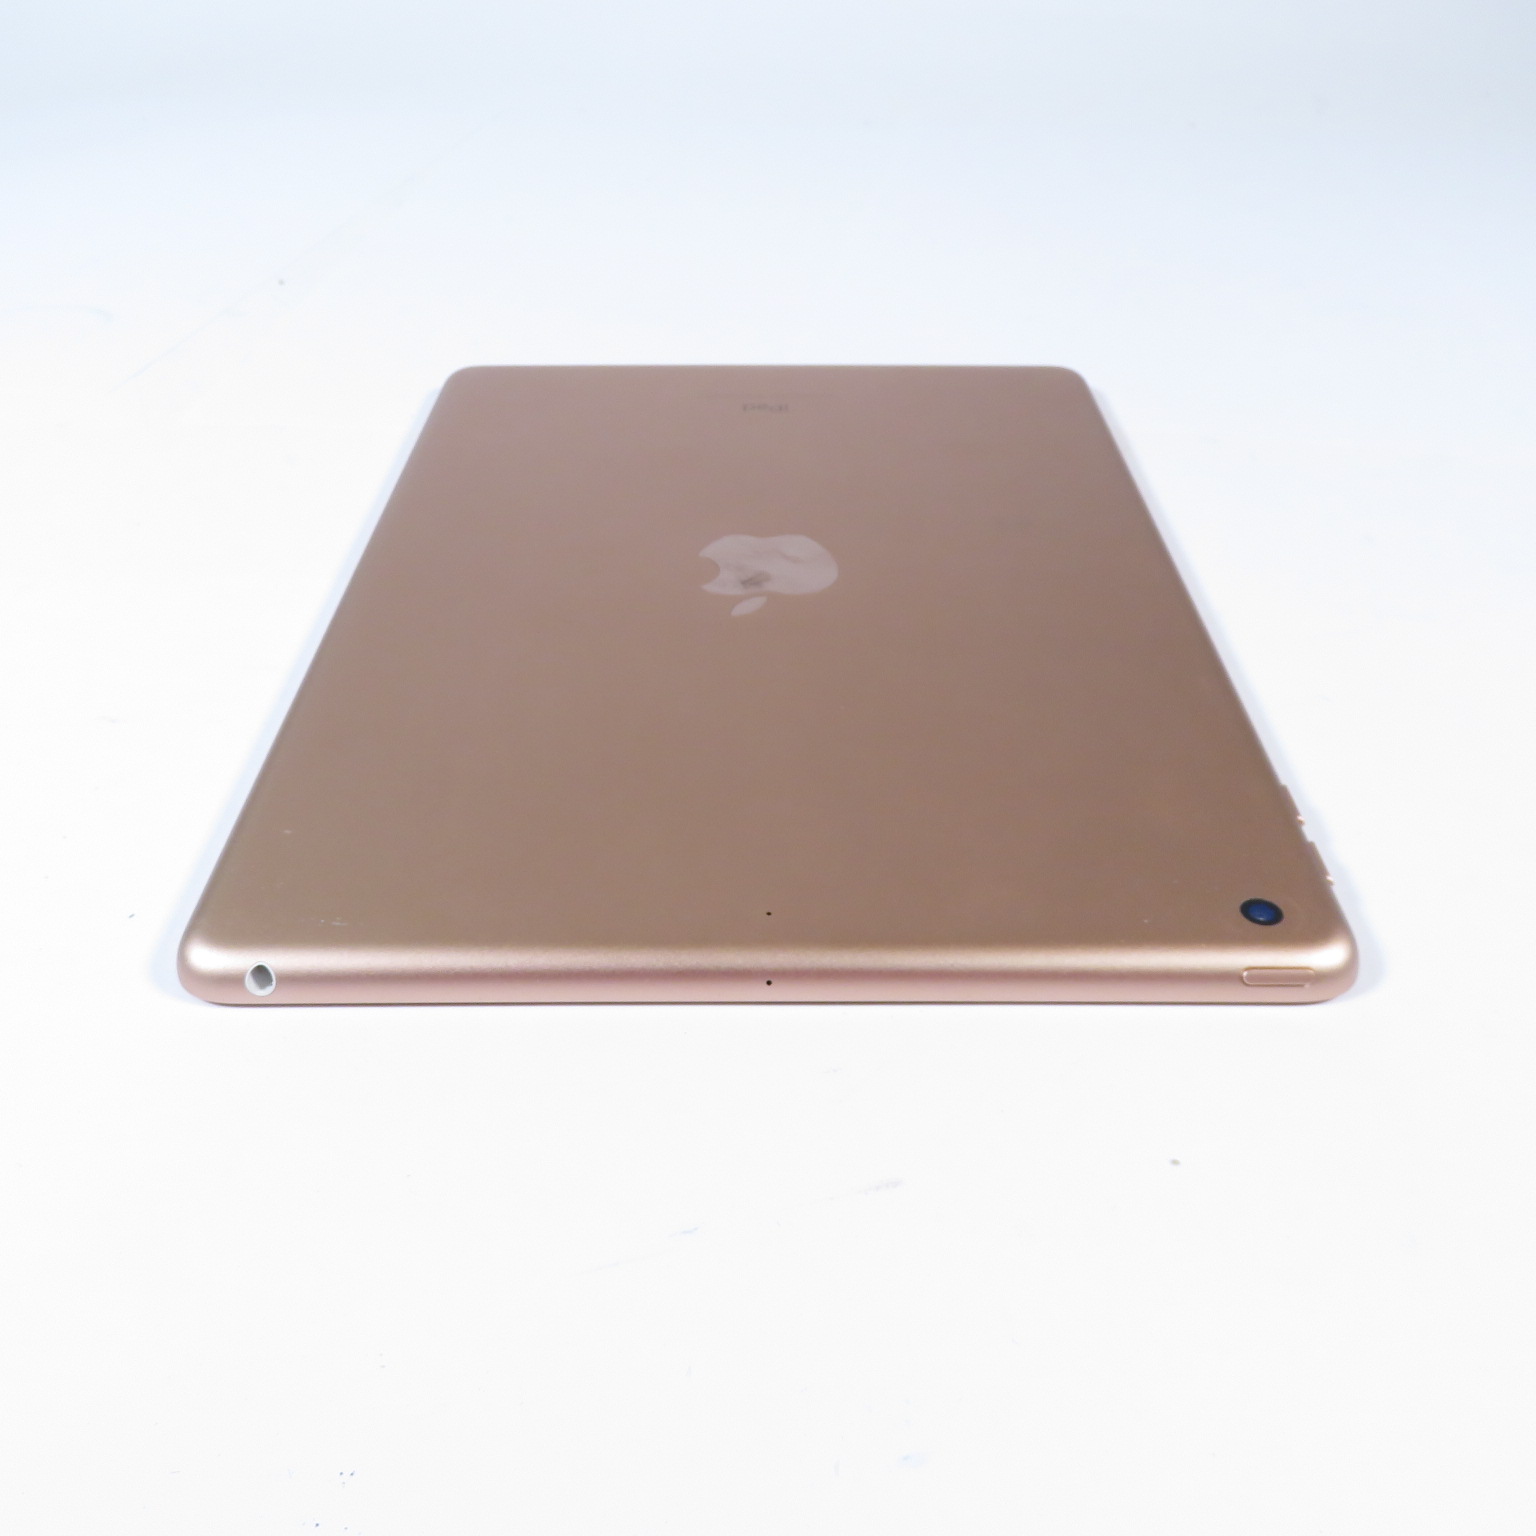 MRJN2LL-A - Apple iPad 9.7 6ème Génération 32Go WiFi 